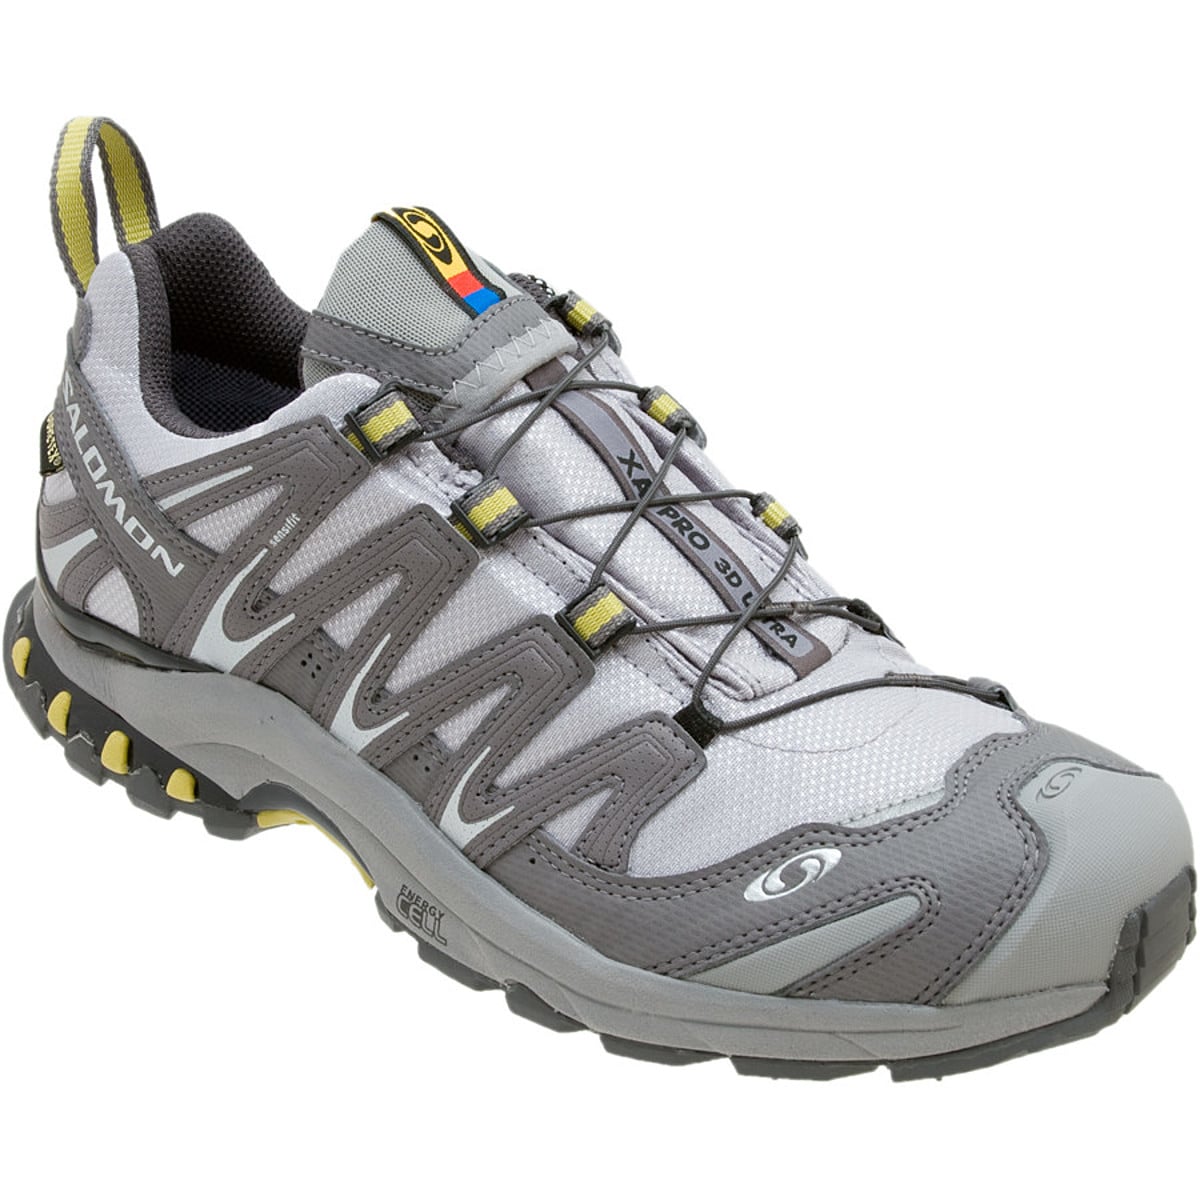 Salomon 3D Ultra GTX Trail Running Shoe Women's - Footwear